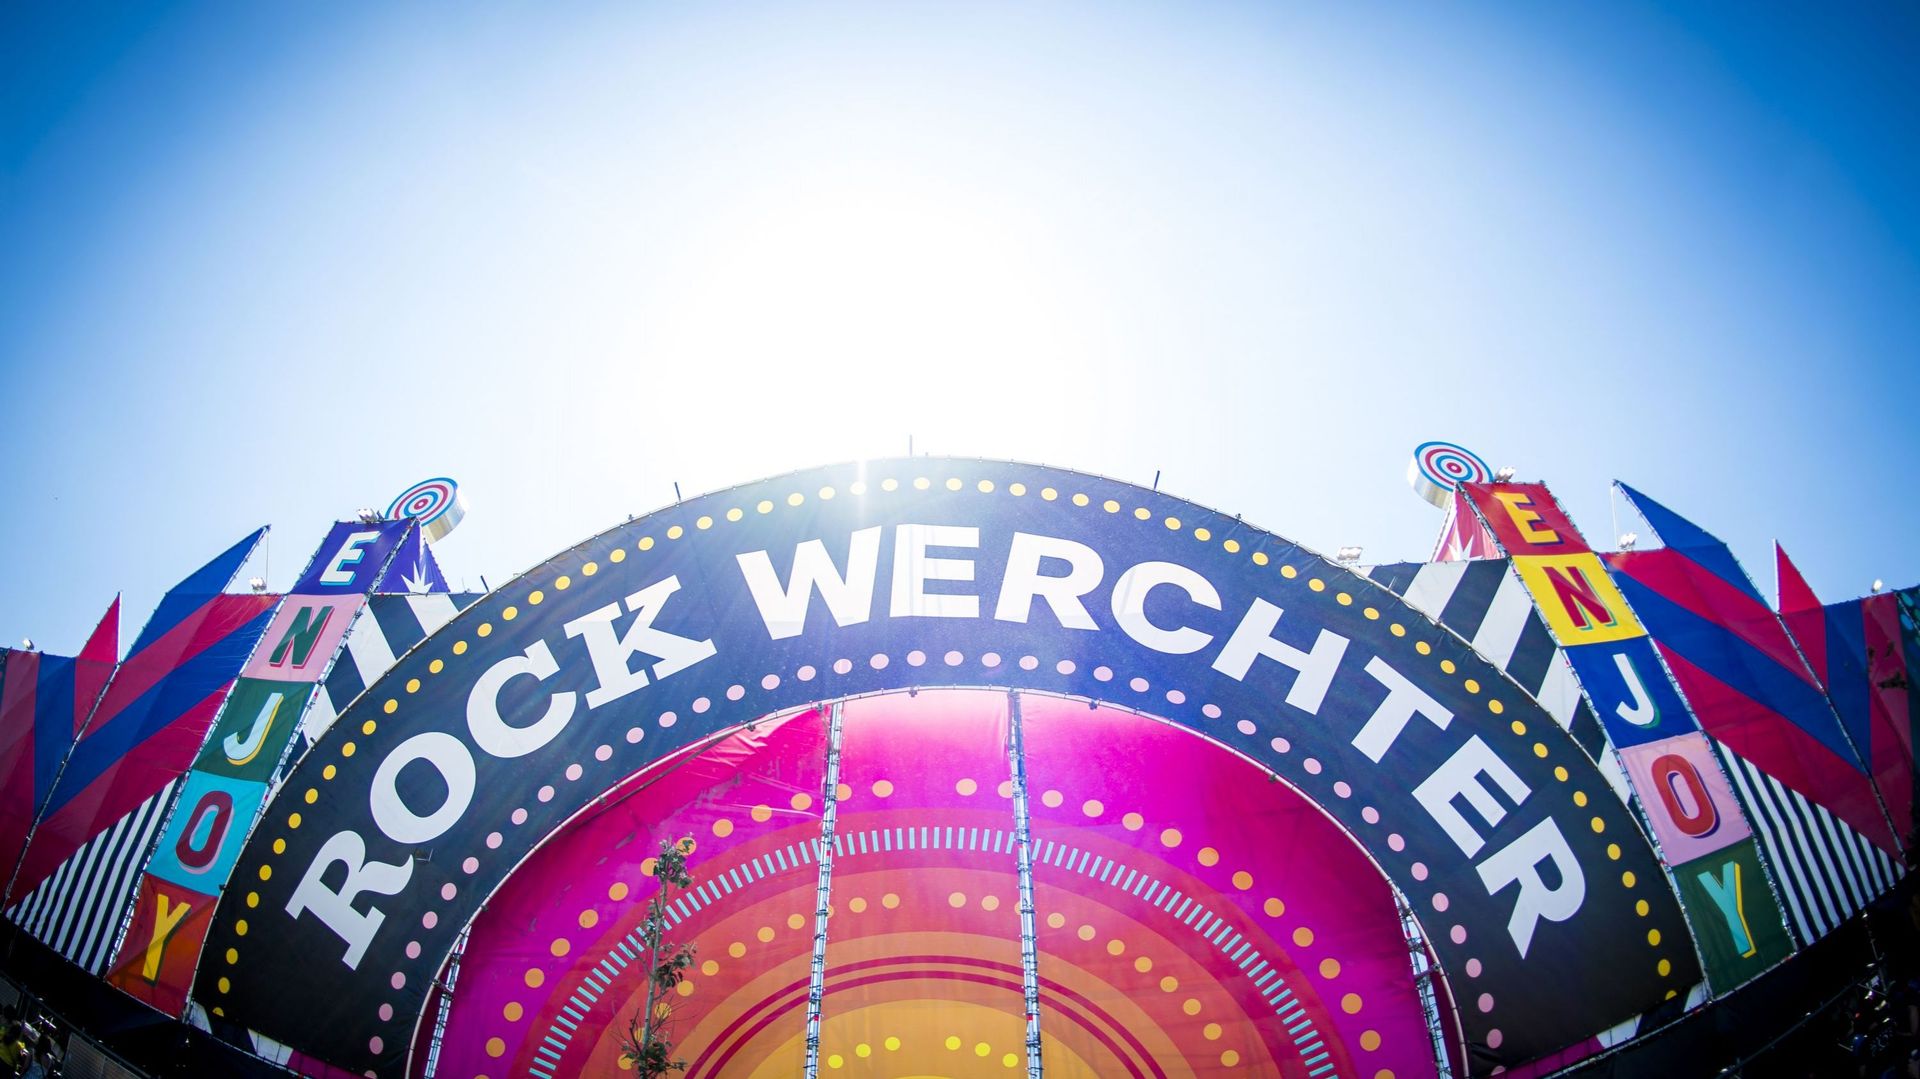 Entrée du festival Rock Werchter, le 27 juin 2019 (illustration) 